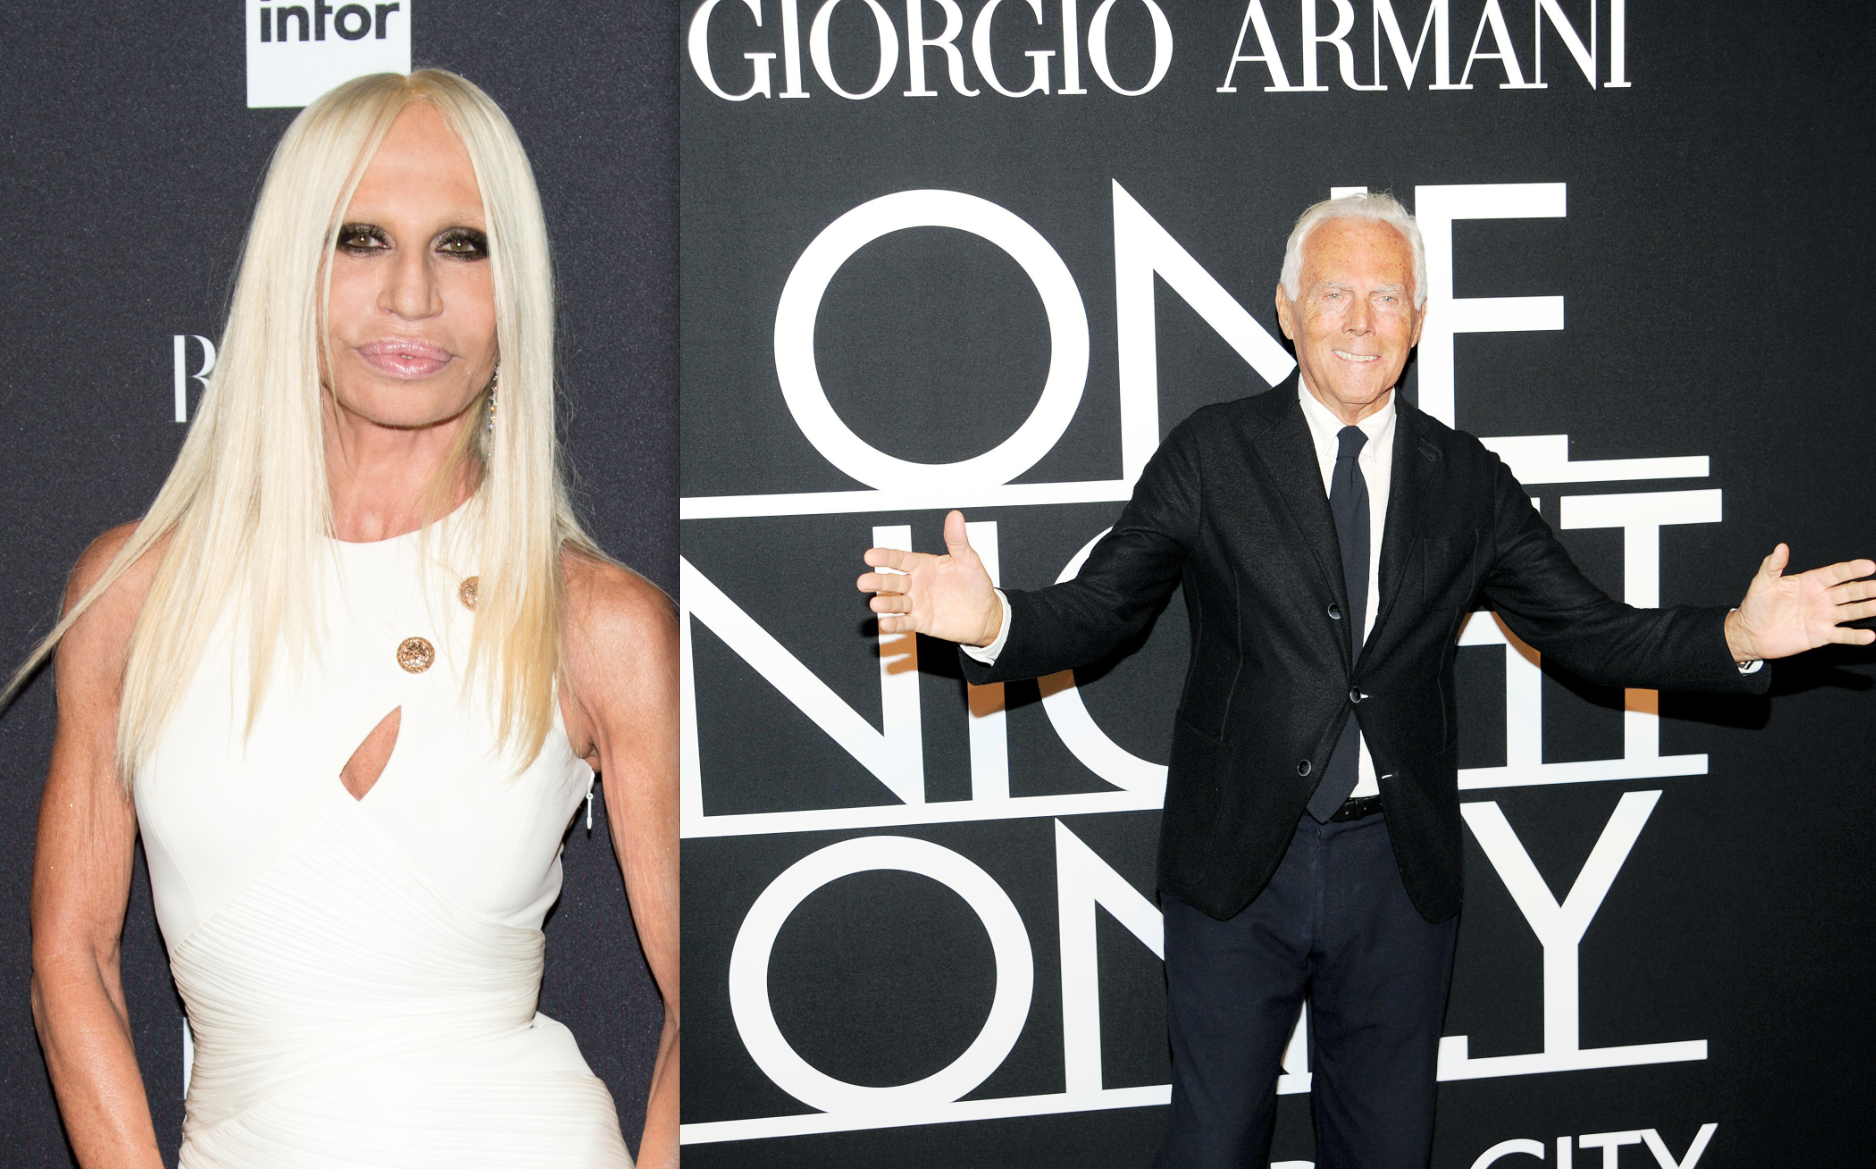 It's On! Donatella Versace Disputes Giorgio Armani's Comments